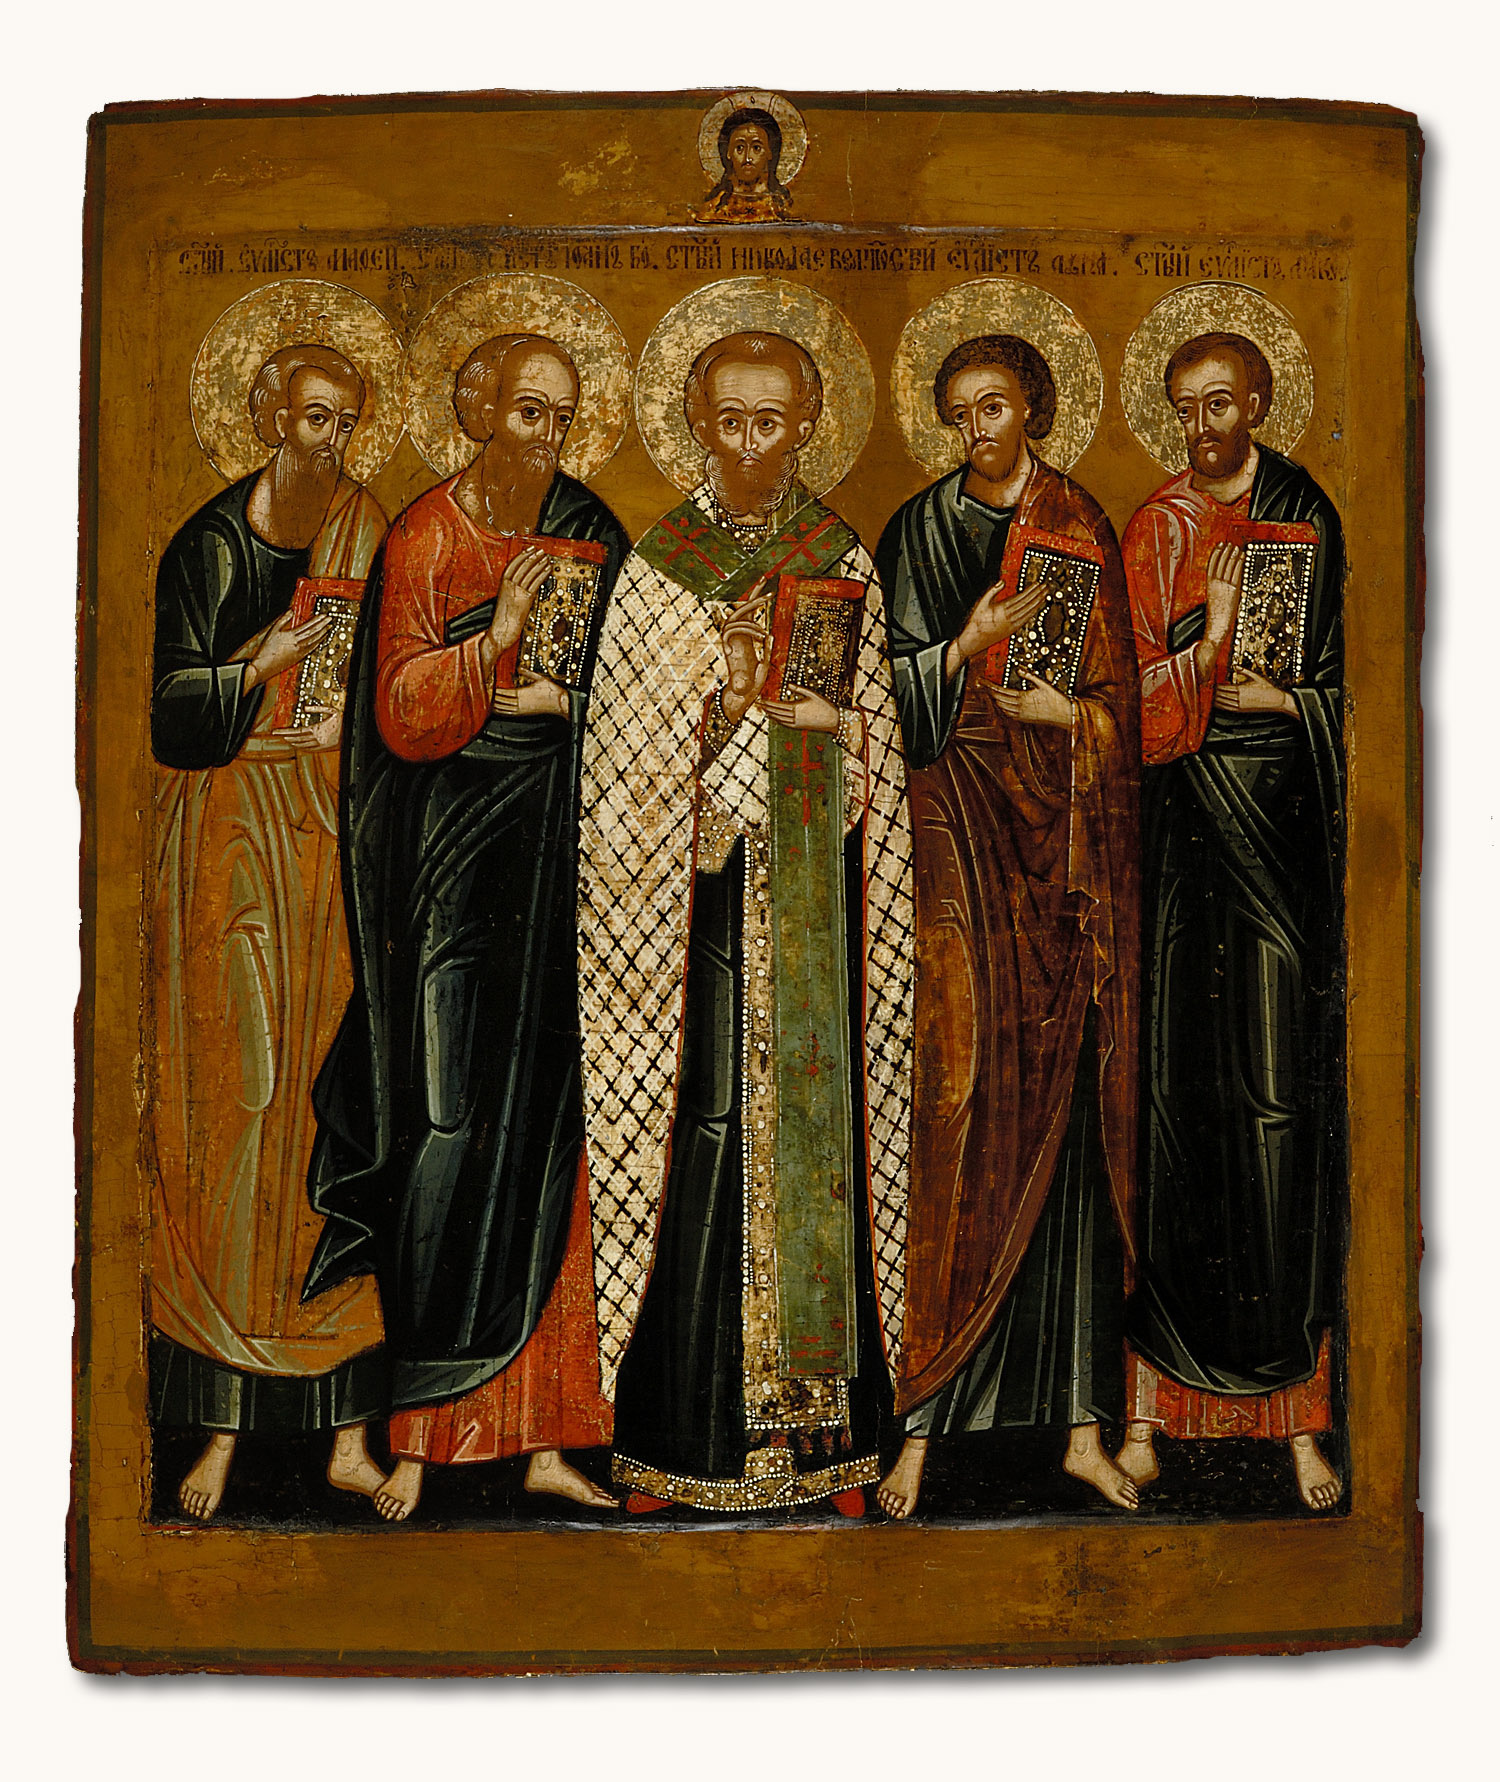 Никола и четыре евангелиста. Русская икона